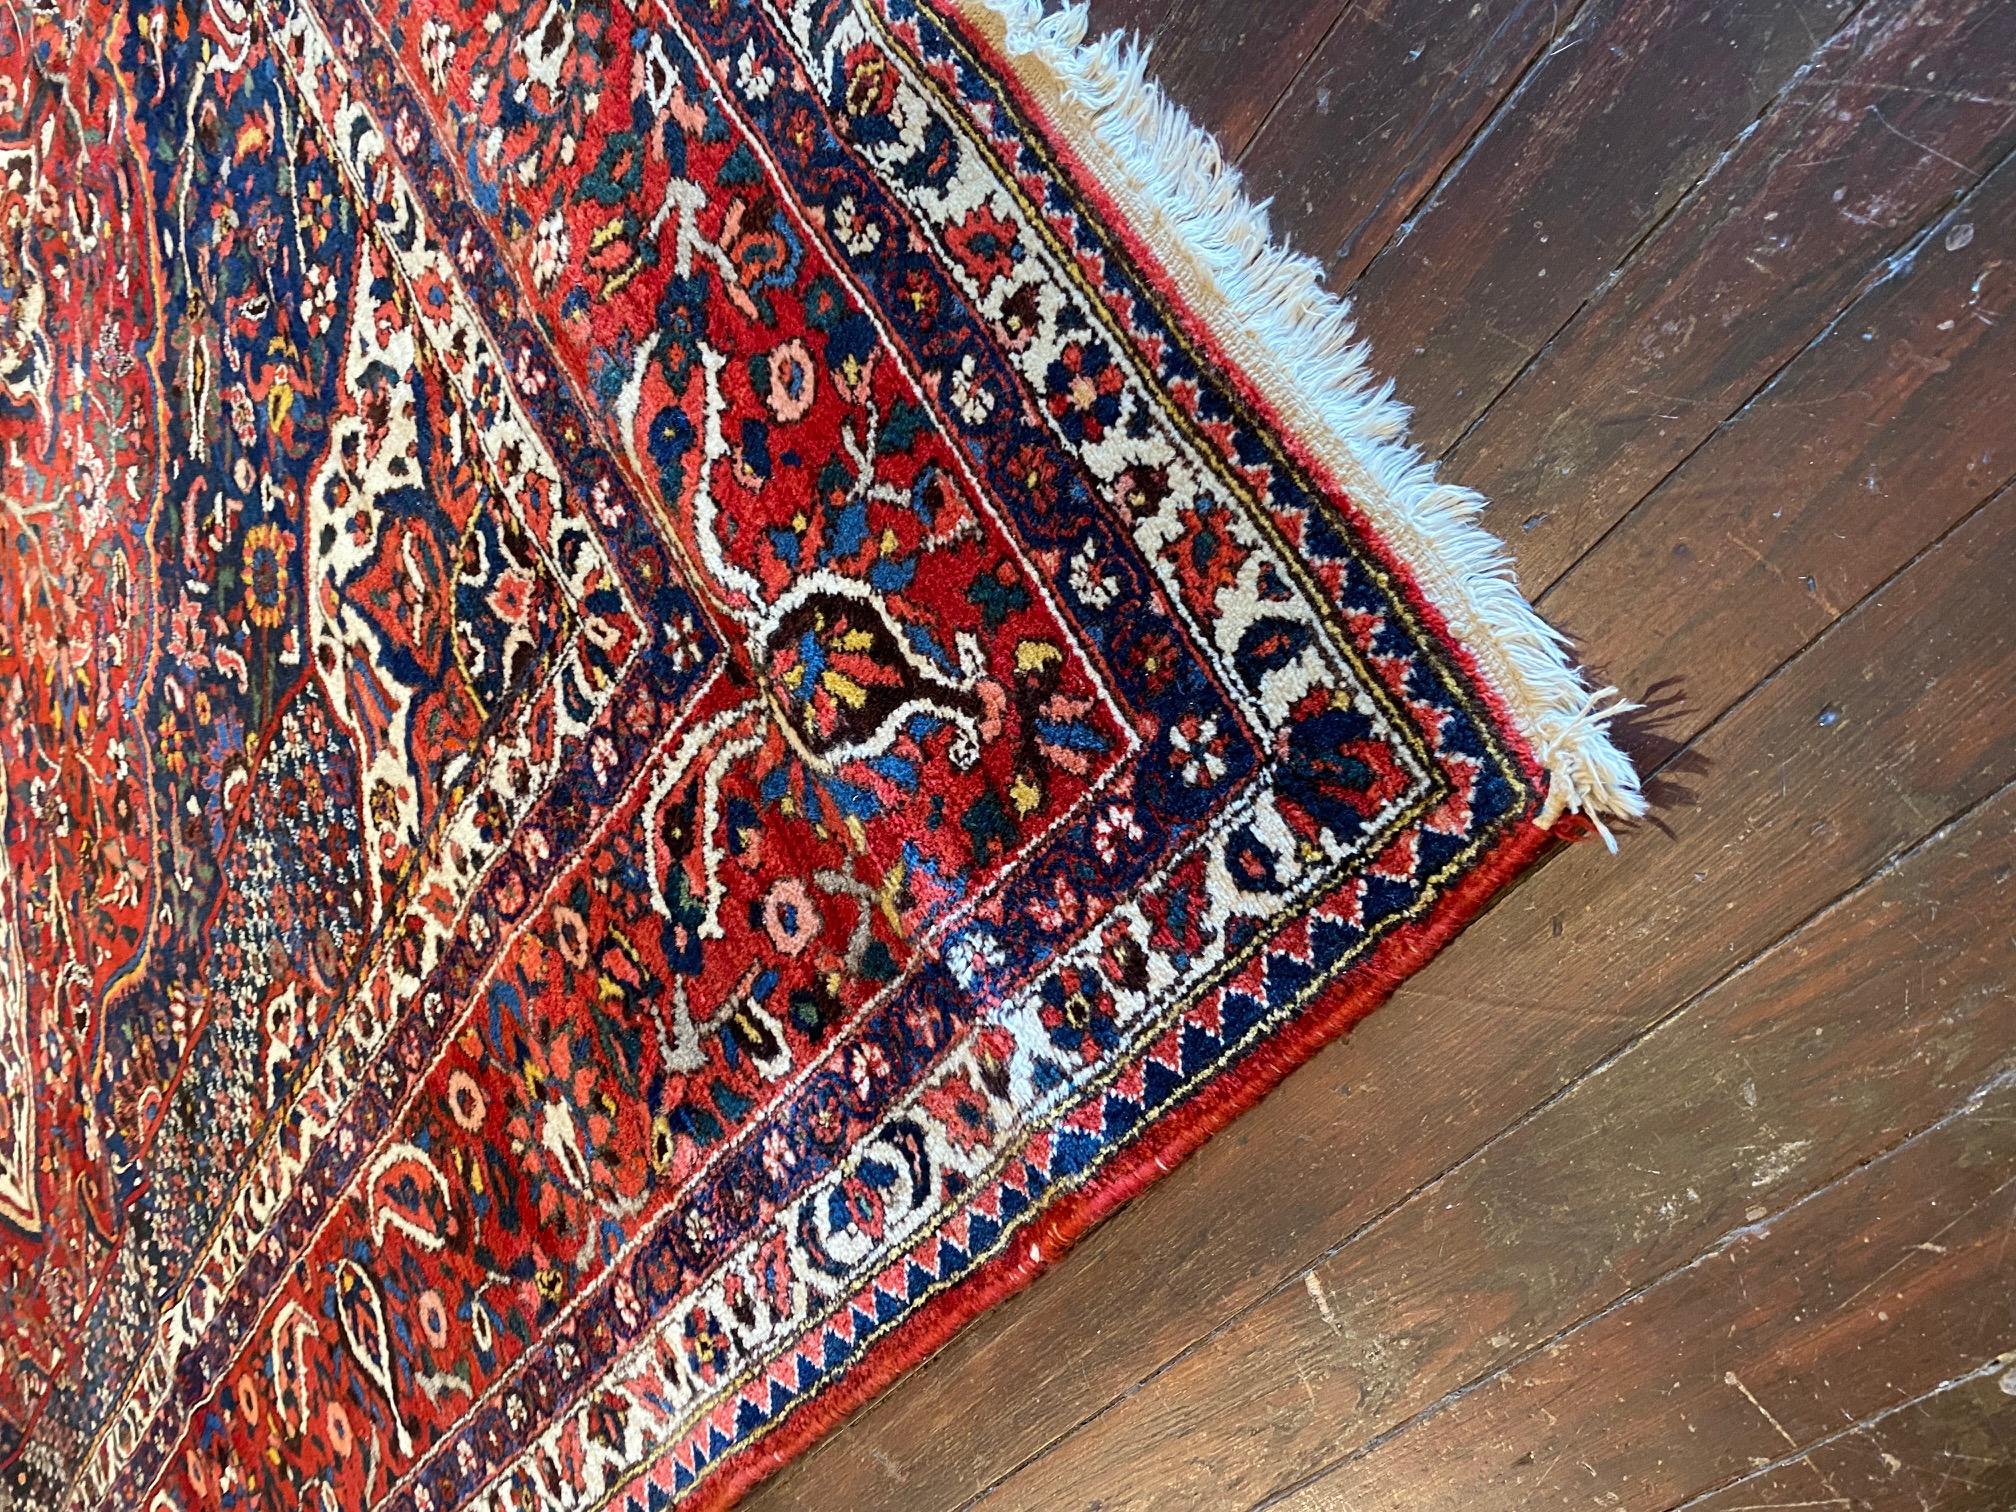 Découvrez le charme exquis du tapis persan Bakhtiyar du début du XXe siècle, un chef-d'œuvre extraordinaire du tissage de tapis persans. Ce superbe tapis présente un magnifique éventail de couleurs riches, créant un régal visuel pour les yeux. Des